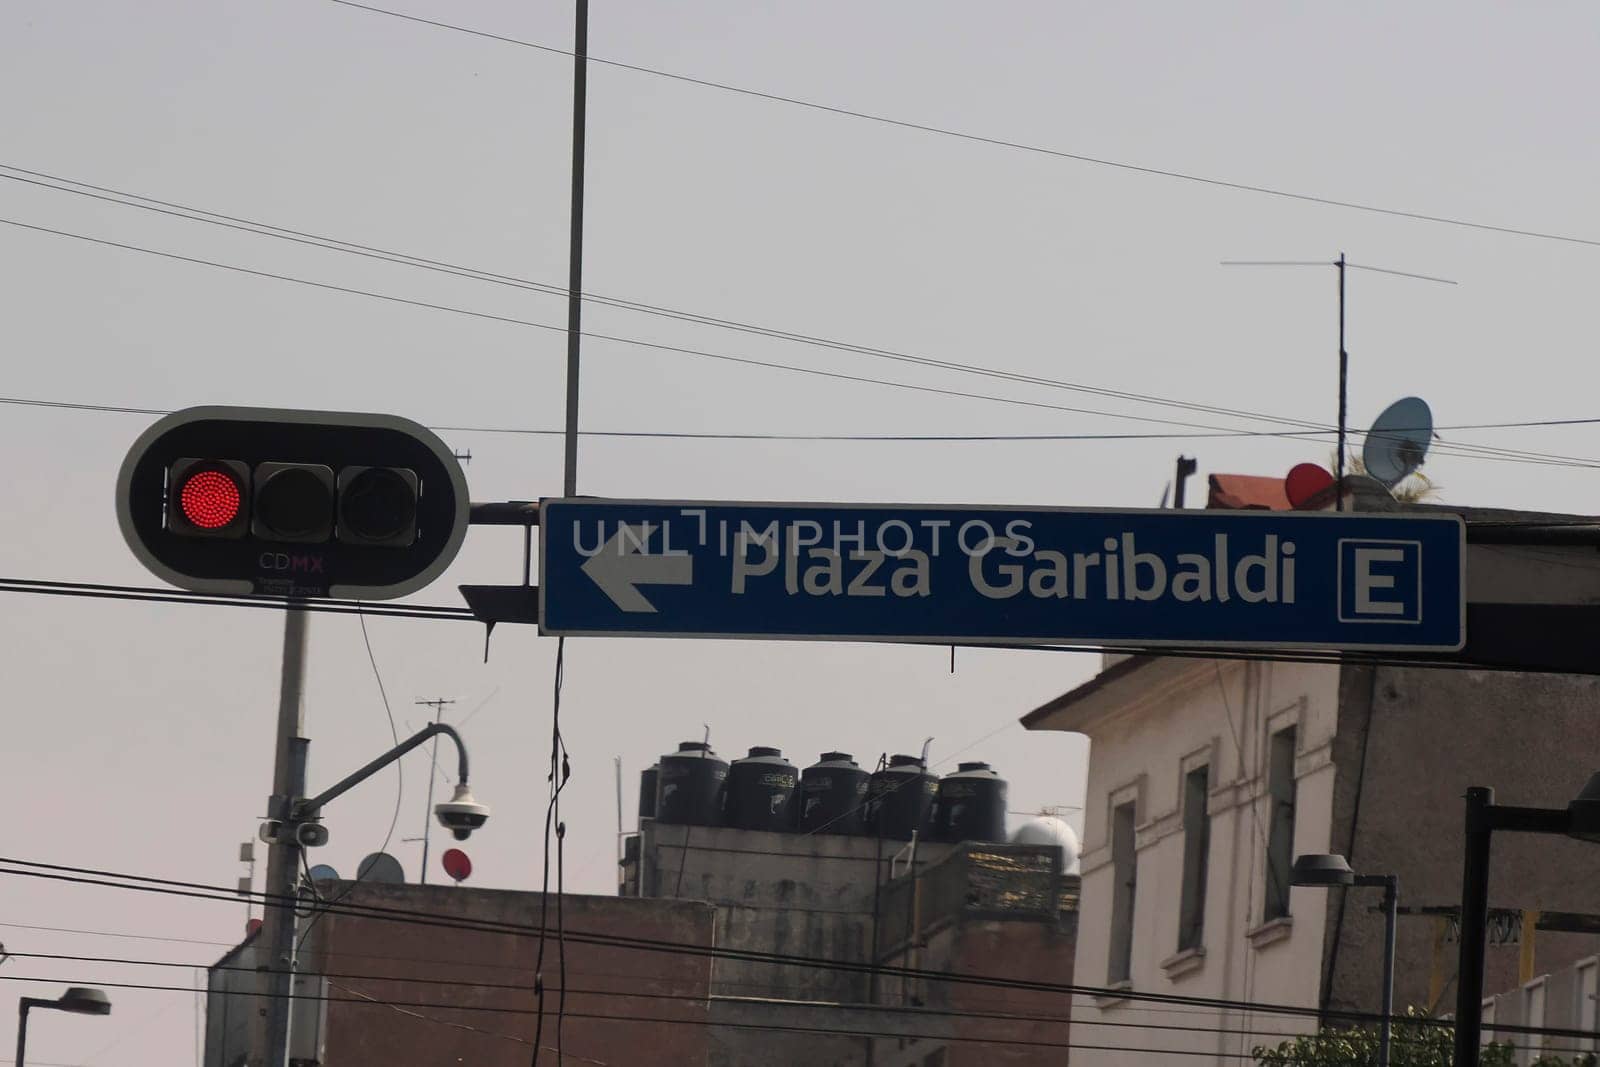 Plaza garibaldi street sign ciudad de mexico, mexico city